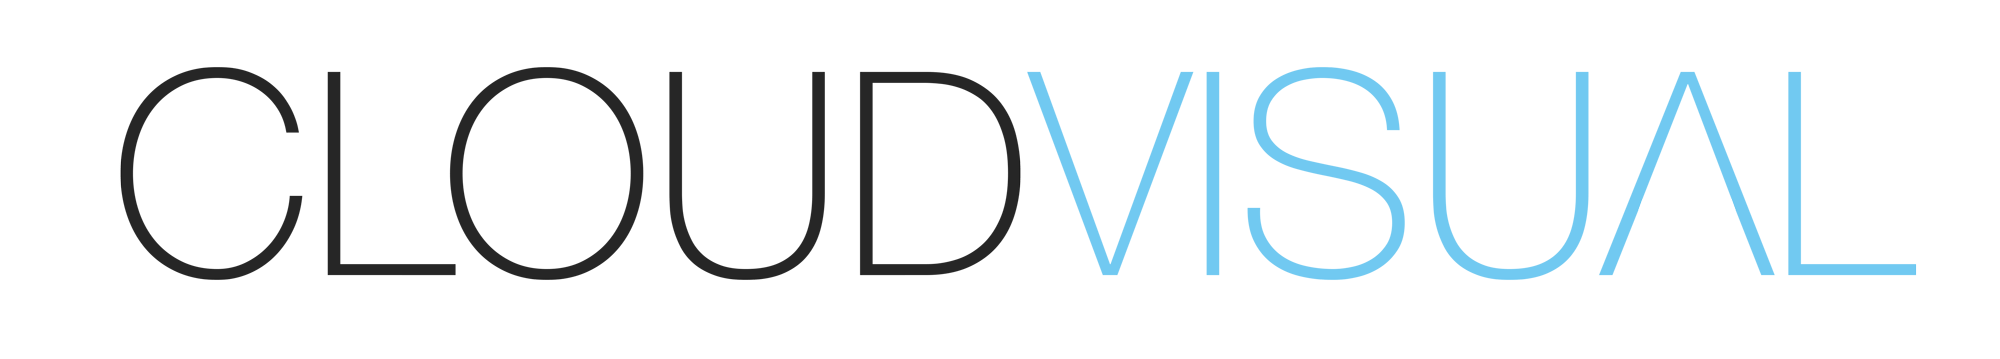 cloudvisual company logo